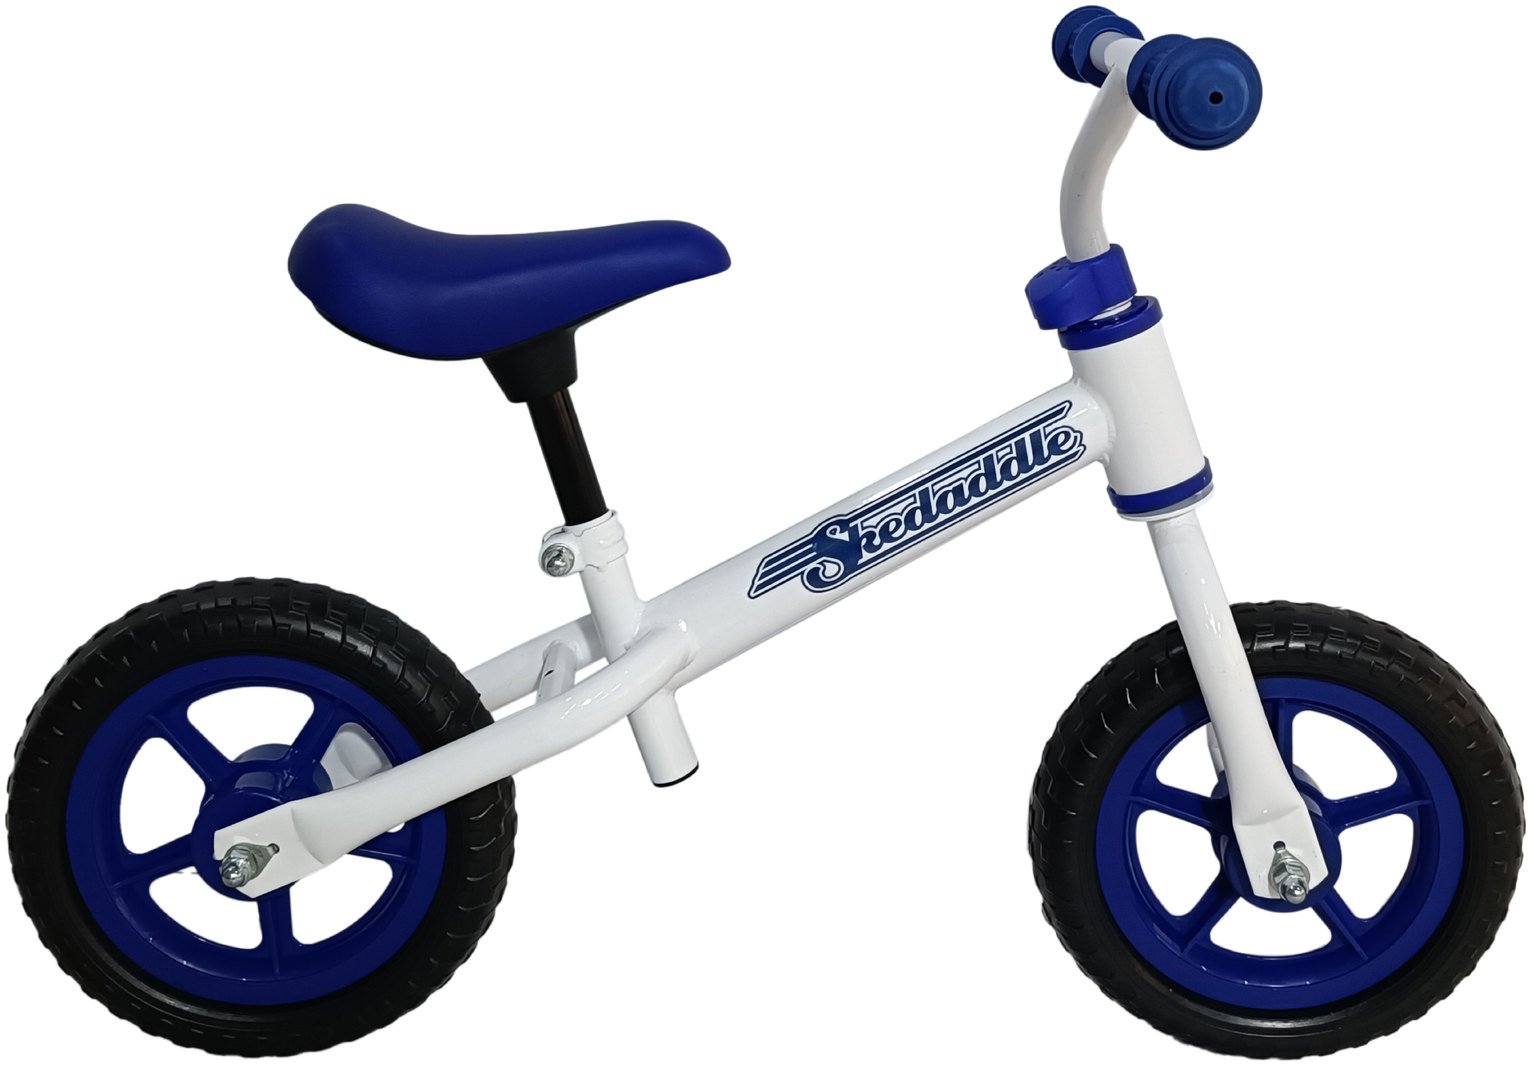 Skedaddle 10inch Wheel Size Unisex Balance Bike - Blue